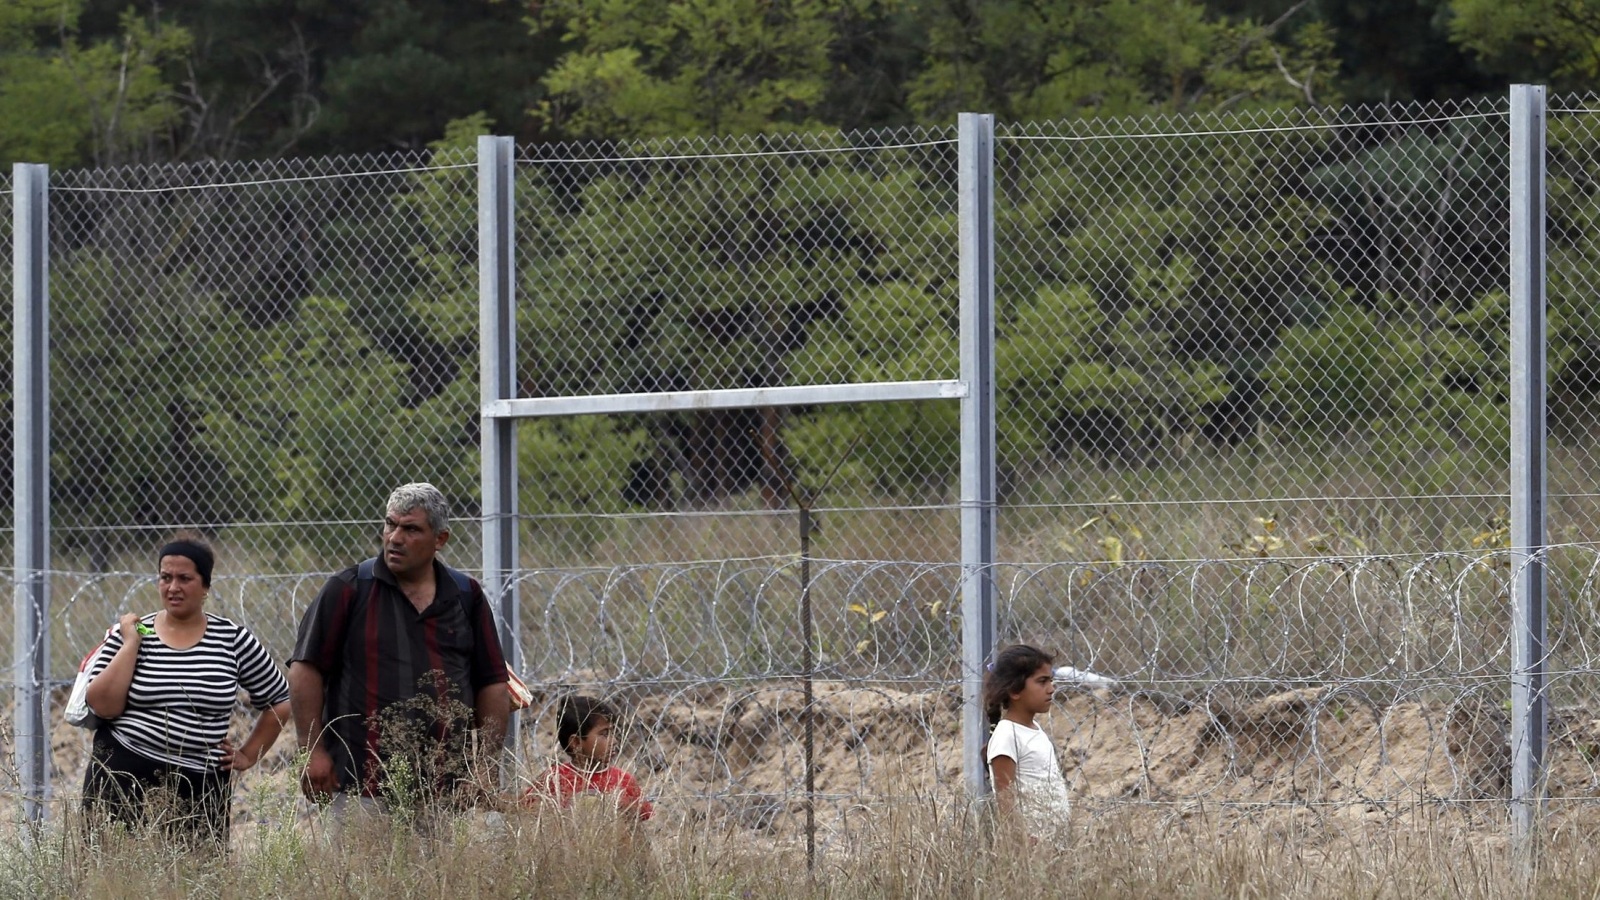 تسييج الحدود المجرية أمام اللاجئين أضاف أعباء جديدة على سلطات سلوفينيا ودول الجوار (أسوشيتد برس)